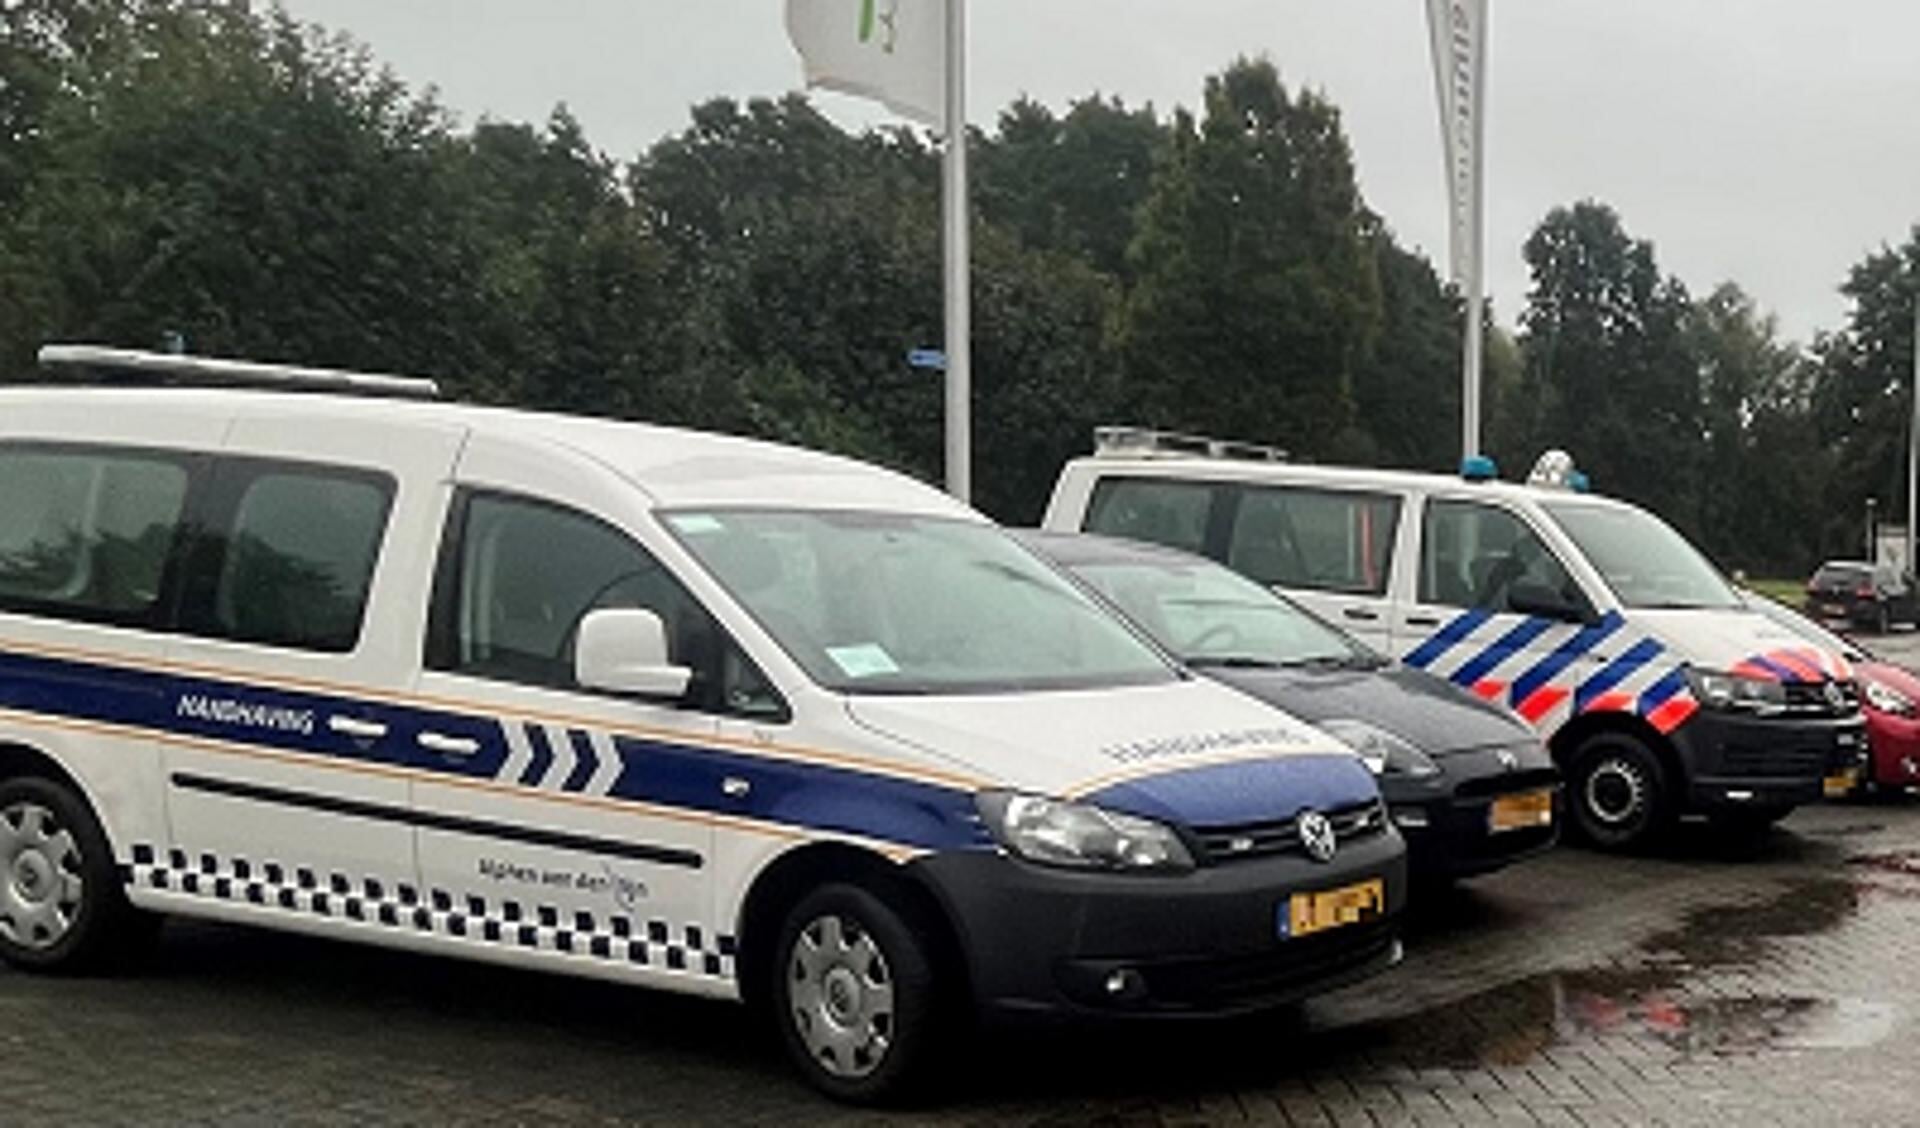  De gemeente Alphen aan den Rijn, Omgevingsdienst Midden-Holland en de politie hebben onlangs samen een integrale controle gedaan bij ondernemers in Alphen.